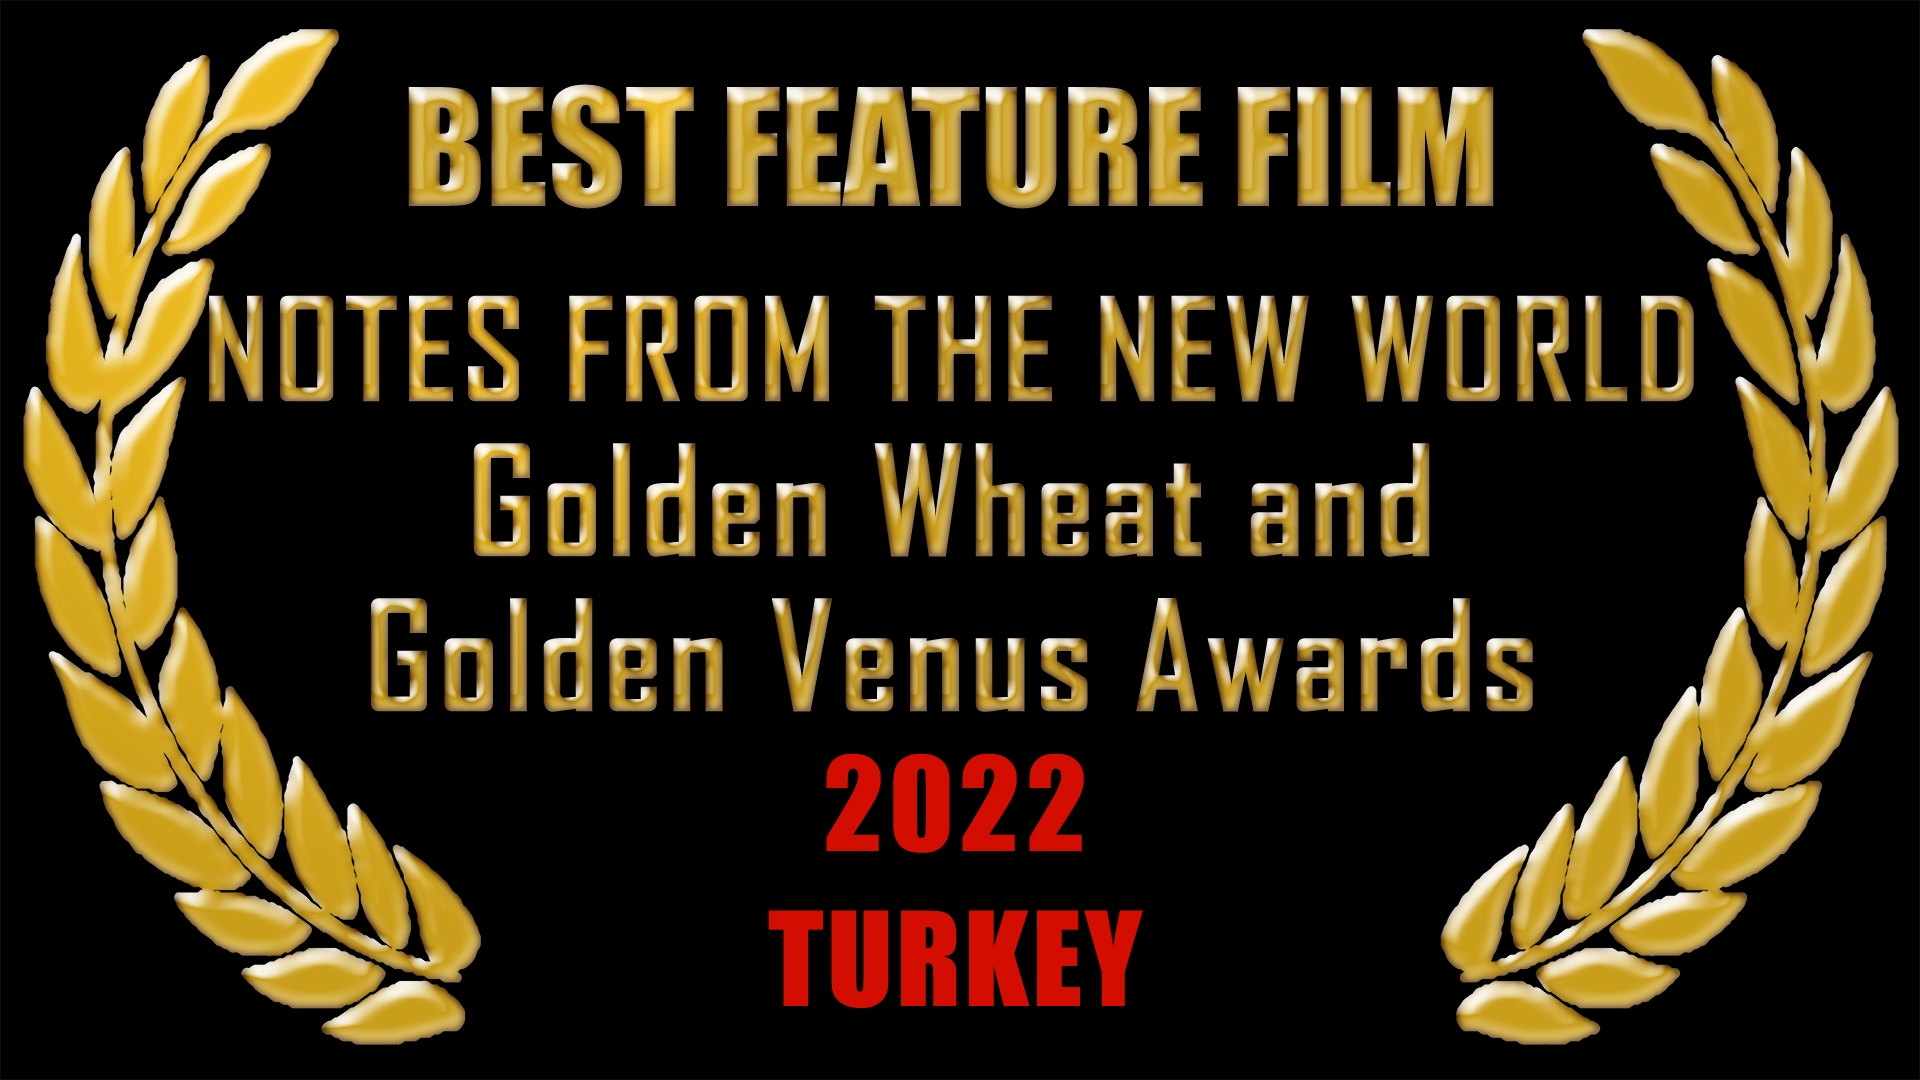 Best Feature Film, 2022 Turkey